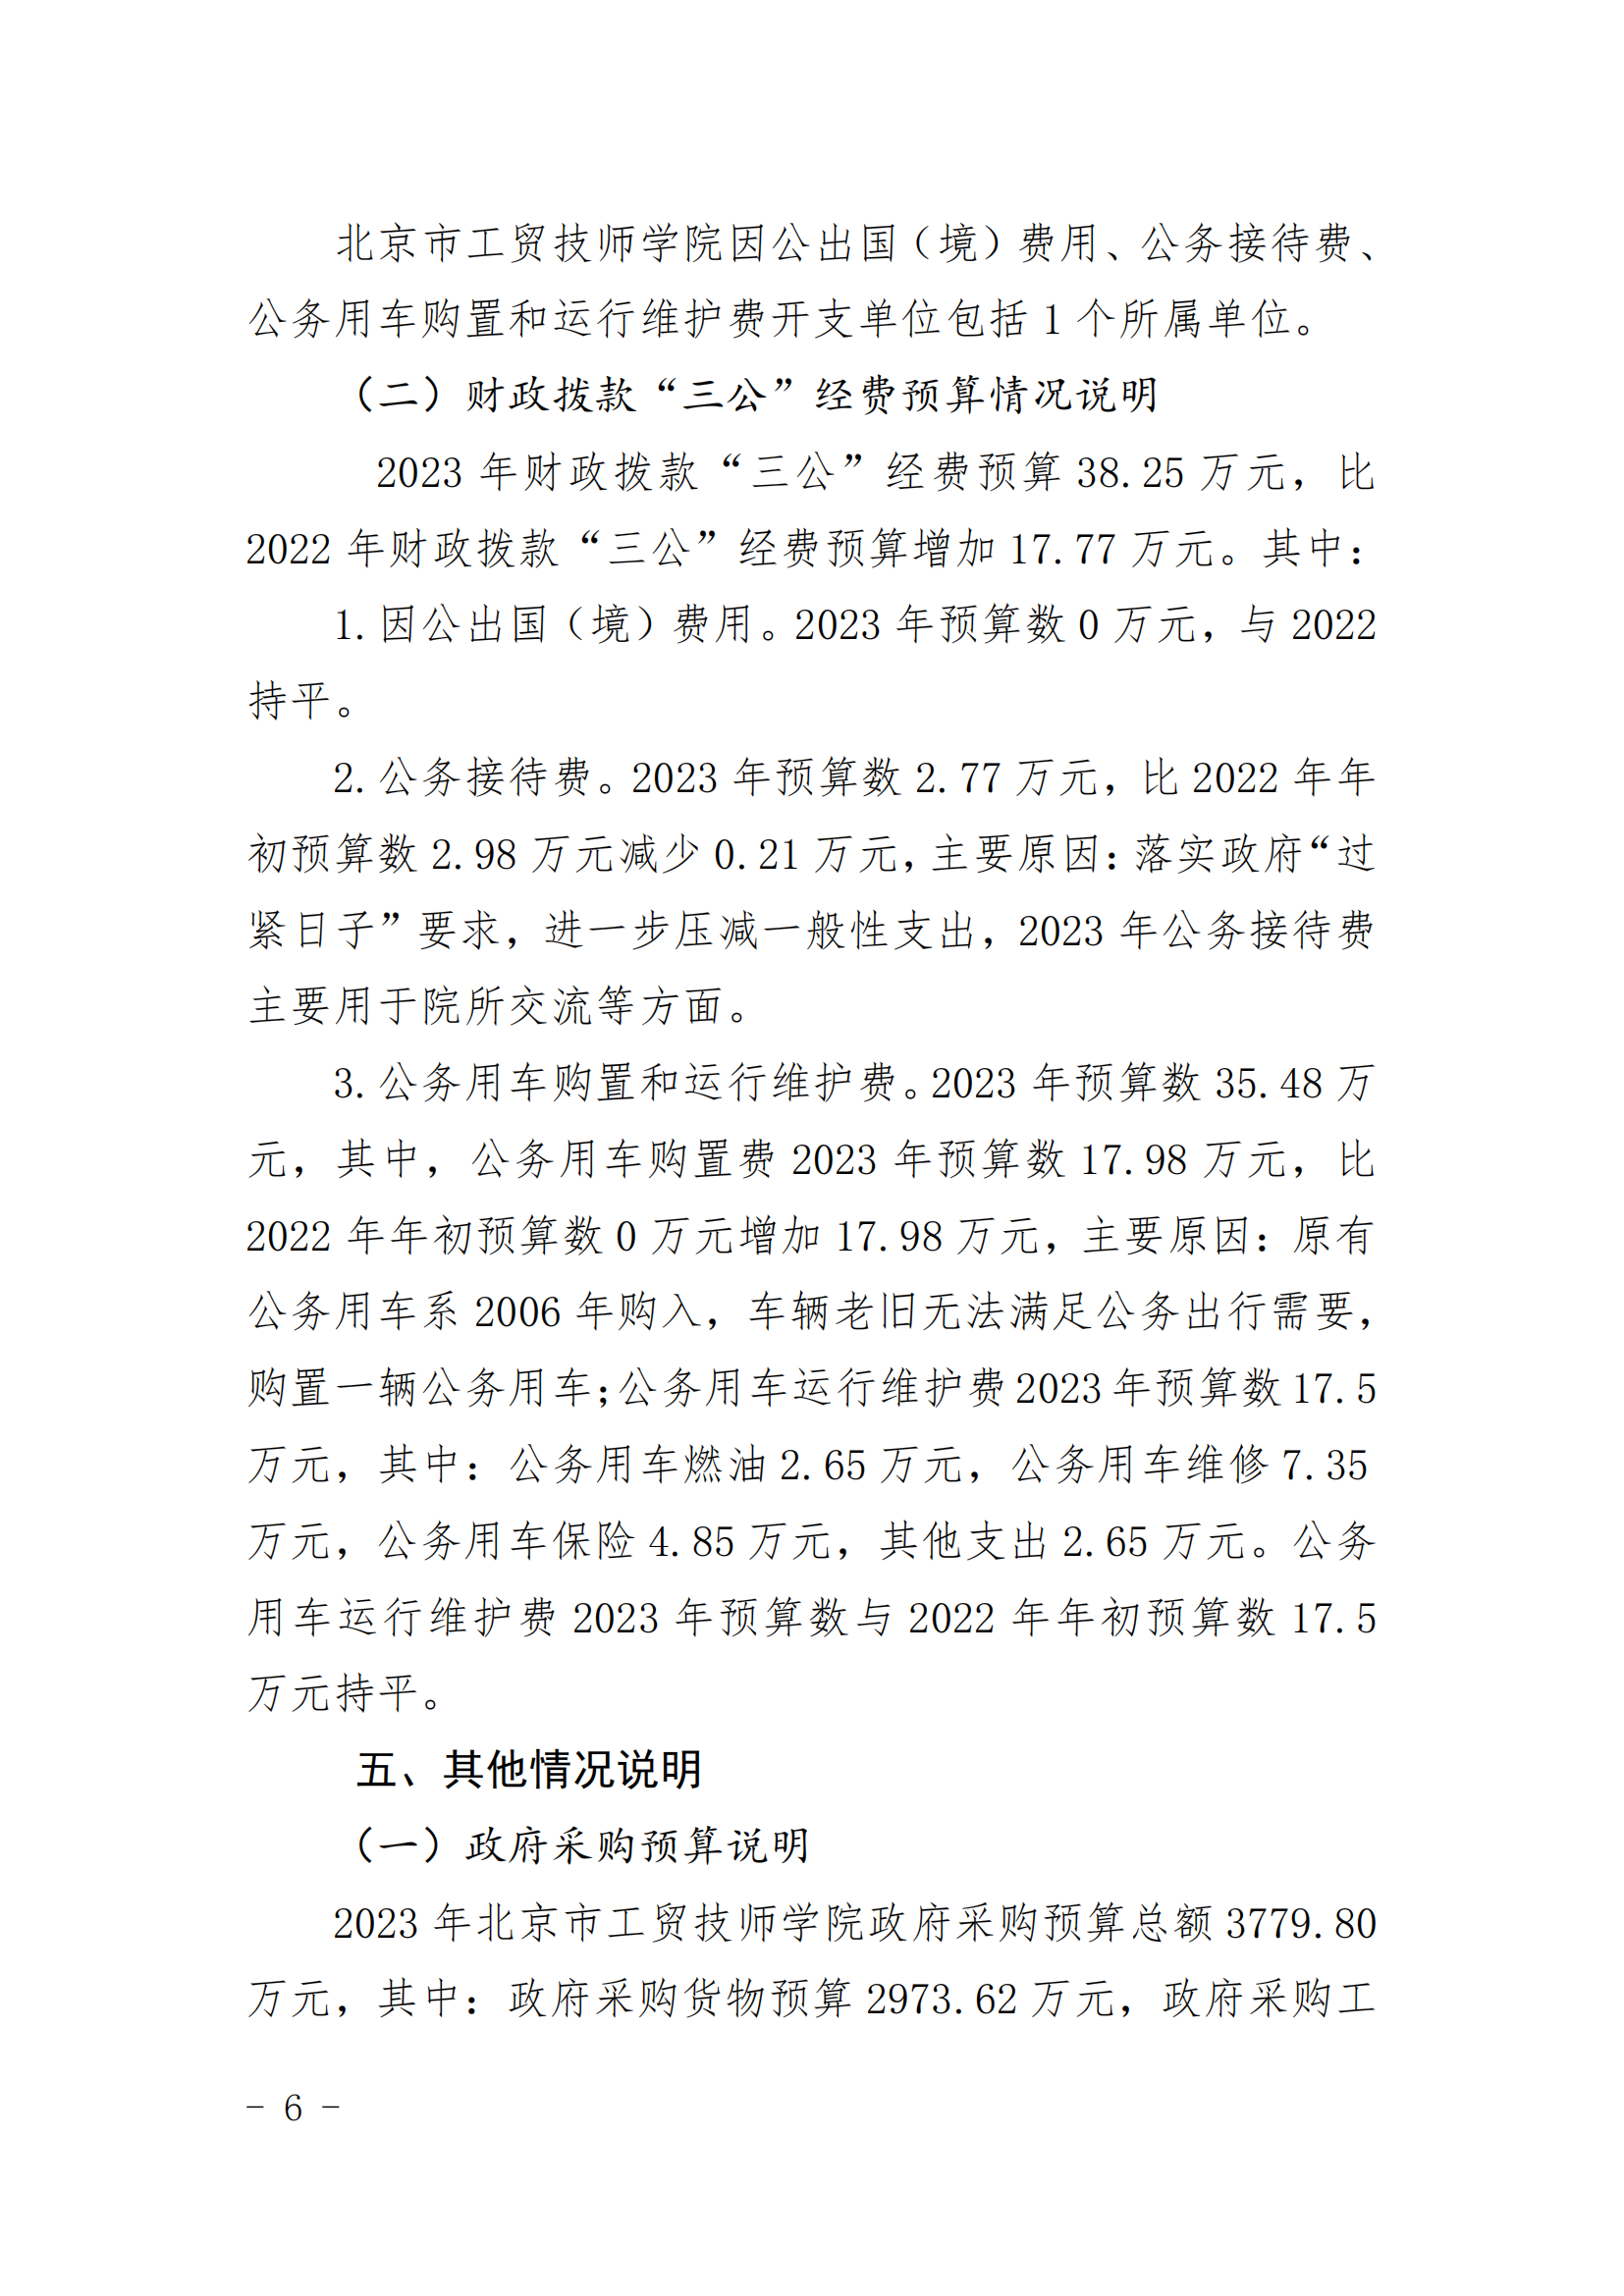 北京市工贸技师学院2023年财政预算信息公开_05.png